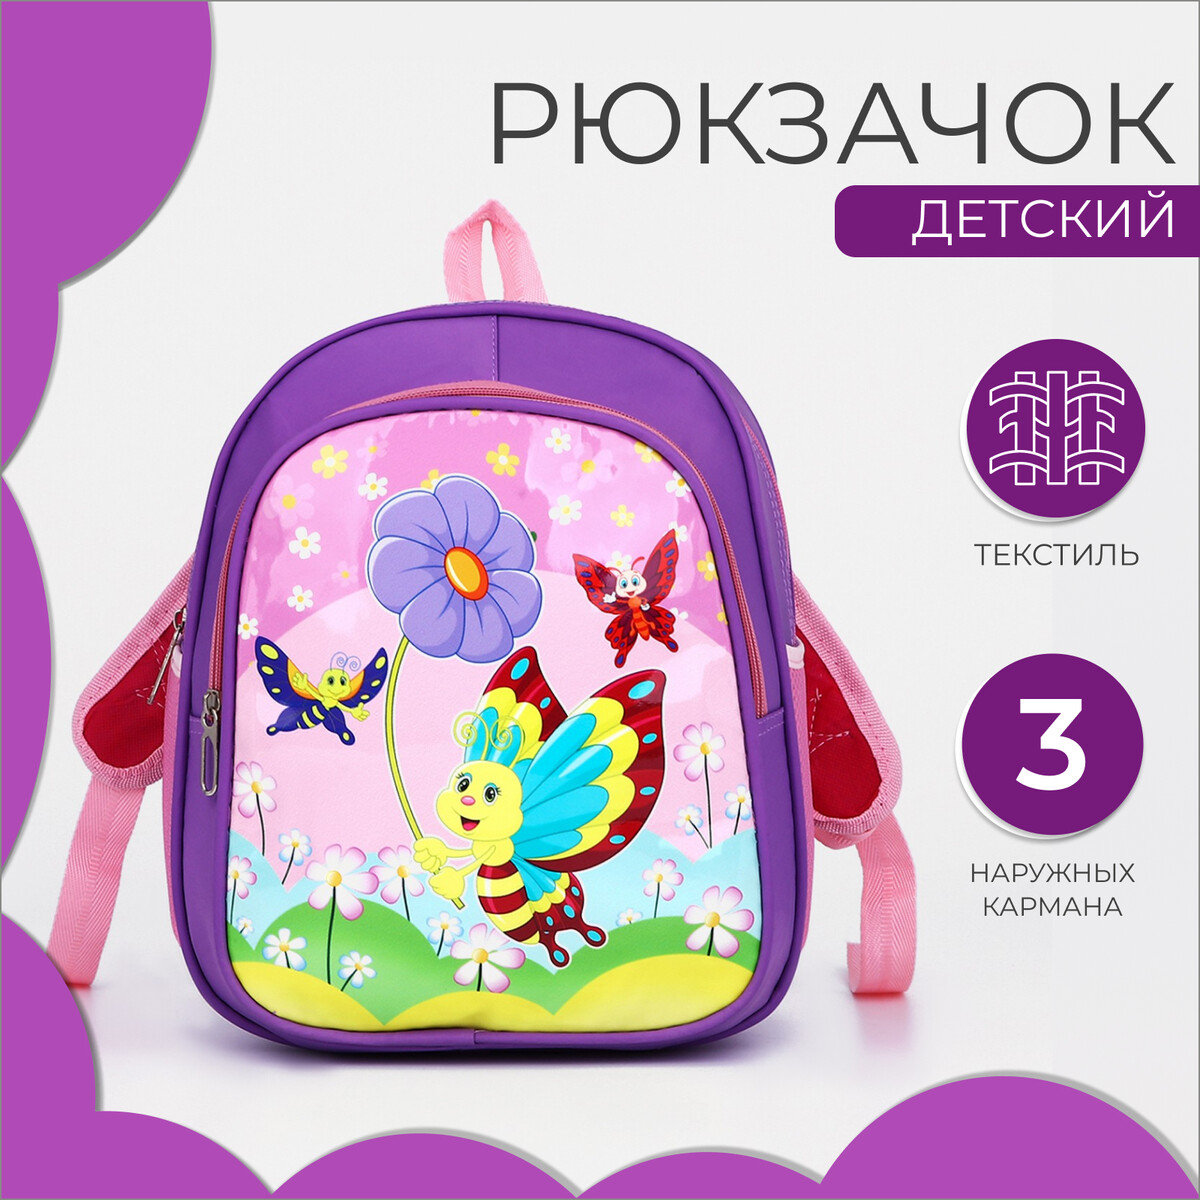 Рюкзак детский на молнии, 3 наружных кармана, цвет фиолетовый рюкзак на молнии фиолетовый